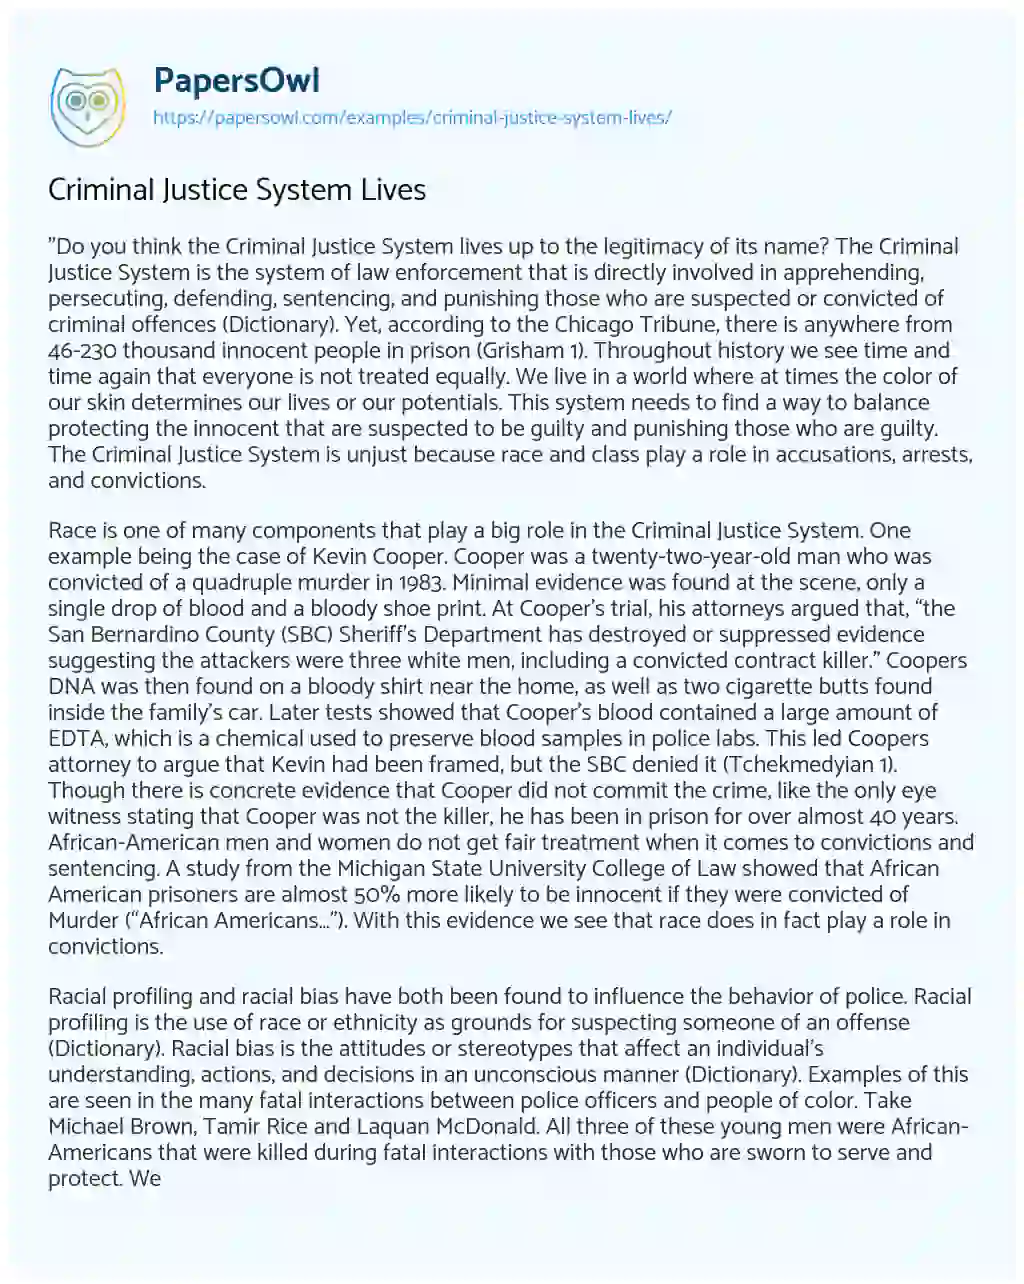 Criminal Justice System Lives essay